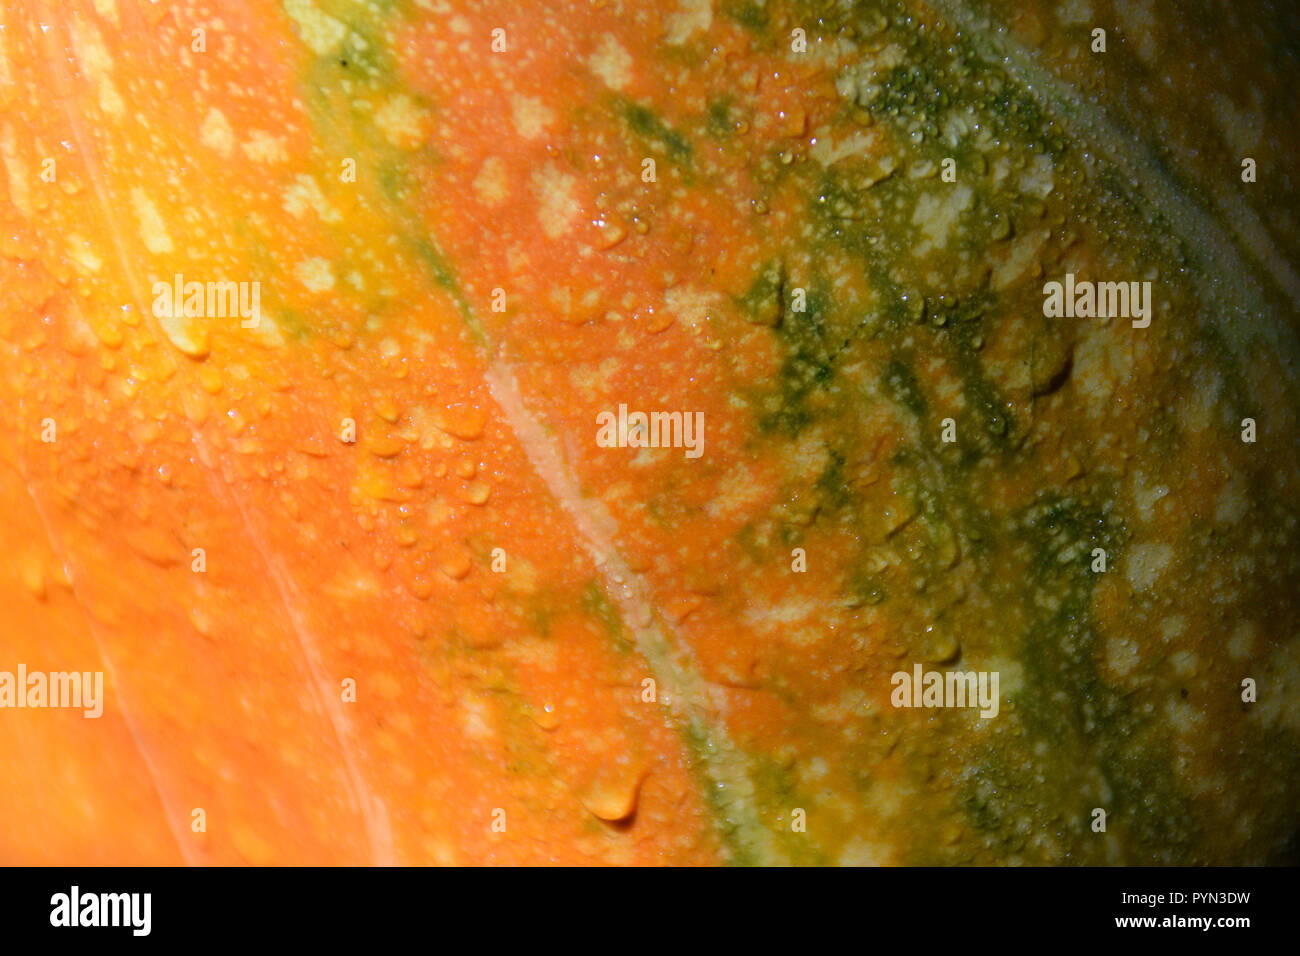 Primo piano di una zucca arancione con gocce d'acqua. Foto Stock